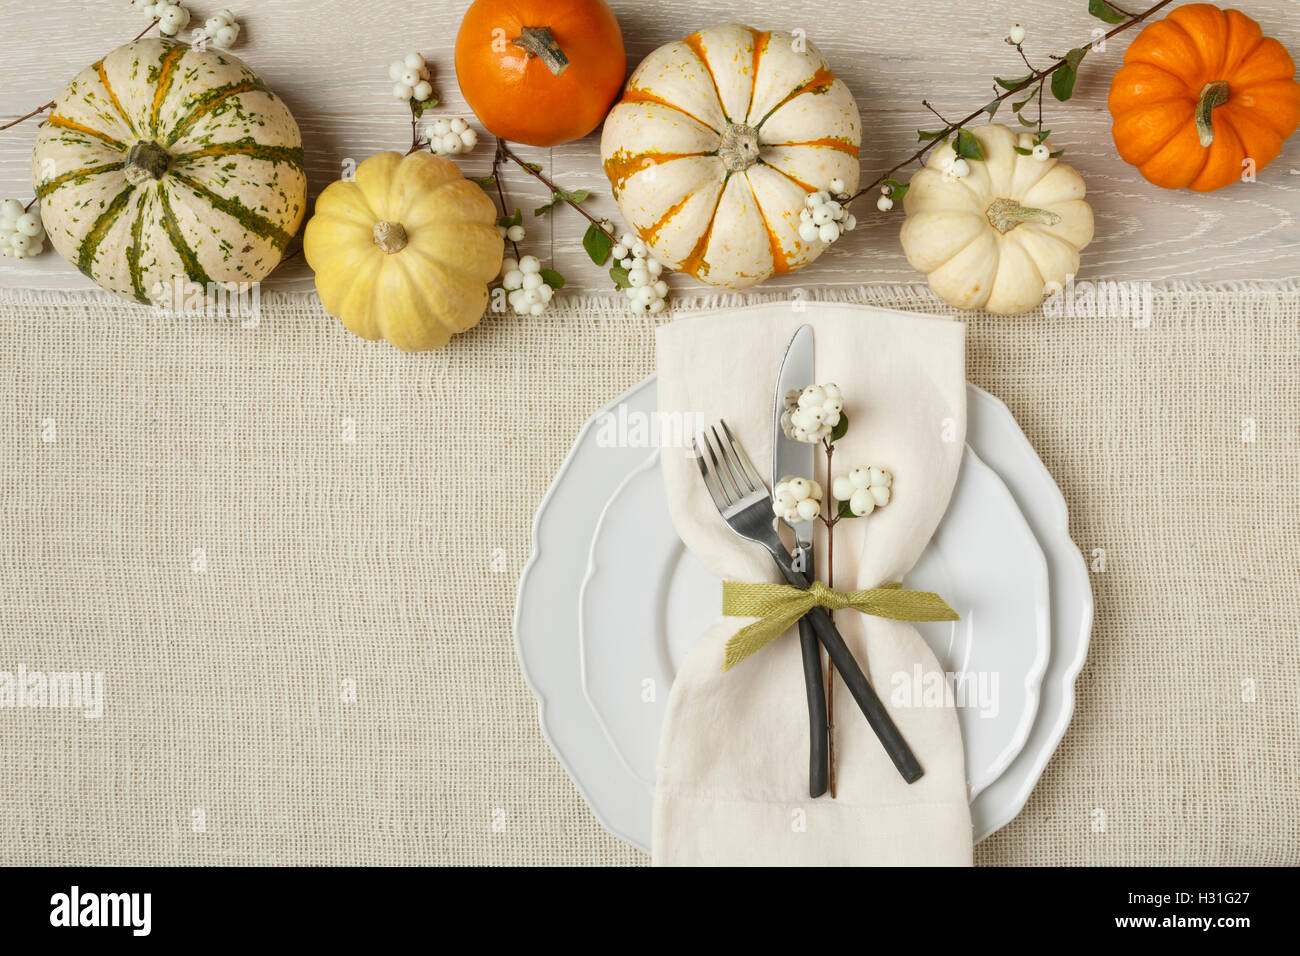 Otoño otoño fiesta de Acción de Gracias cena place setting con calabazas en miniatura, placa, tenedor, cuchillo y servilleta en arpillera antecedentes Foto de stock